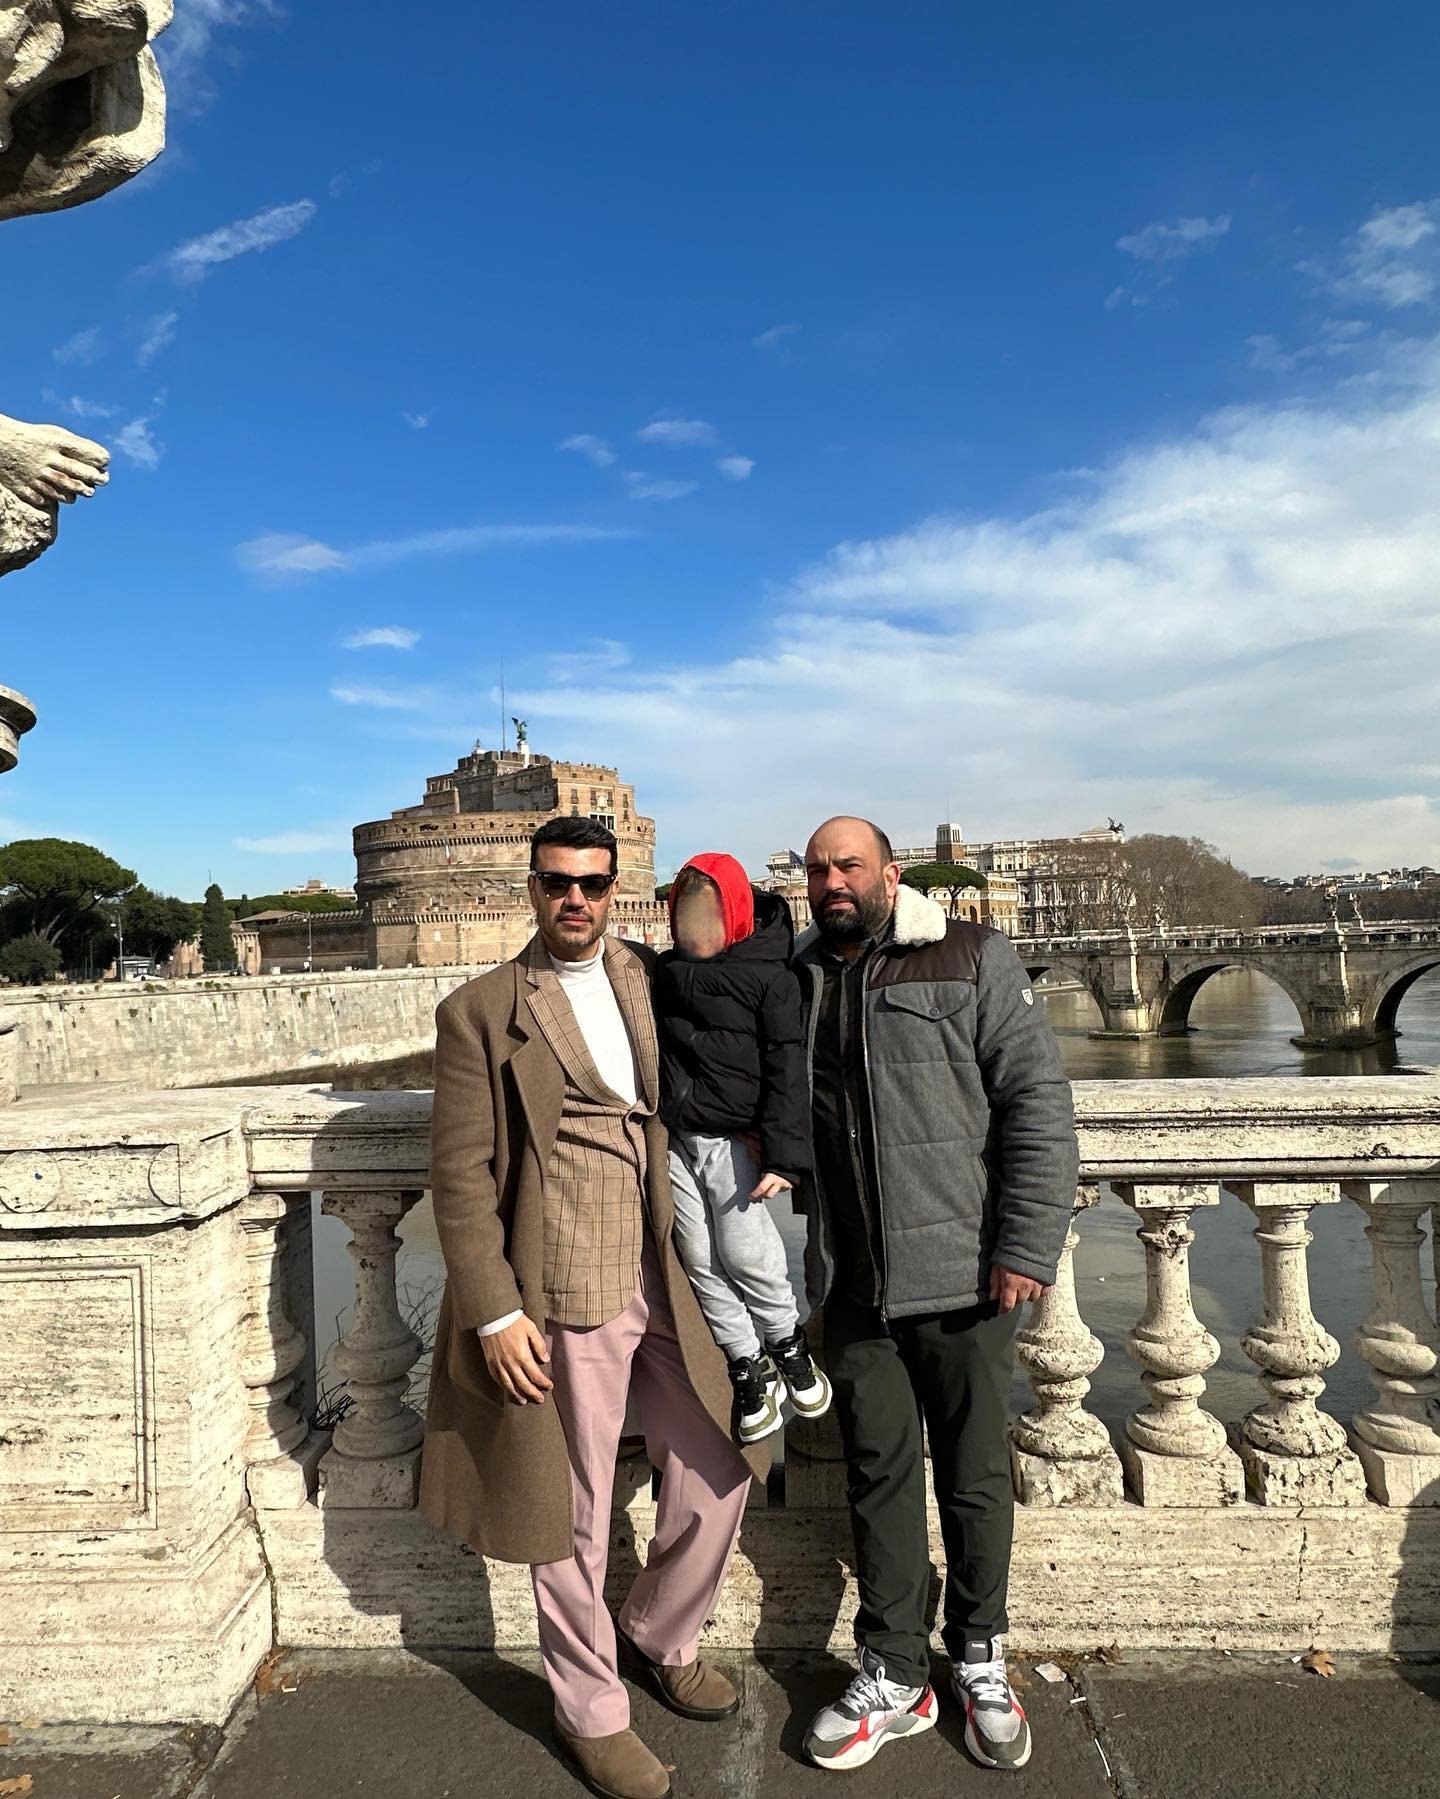 Παντελής Τουτουντζής: Το ρομαντικό ταξίδι με τον σύντροφό του στη Ρώμη και οι κοινές φωτογραφίες